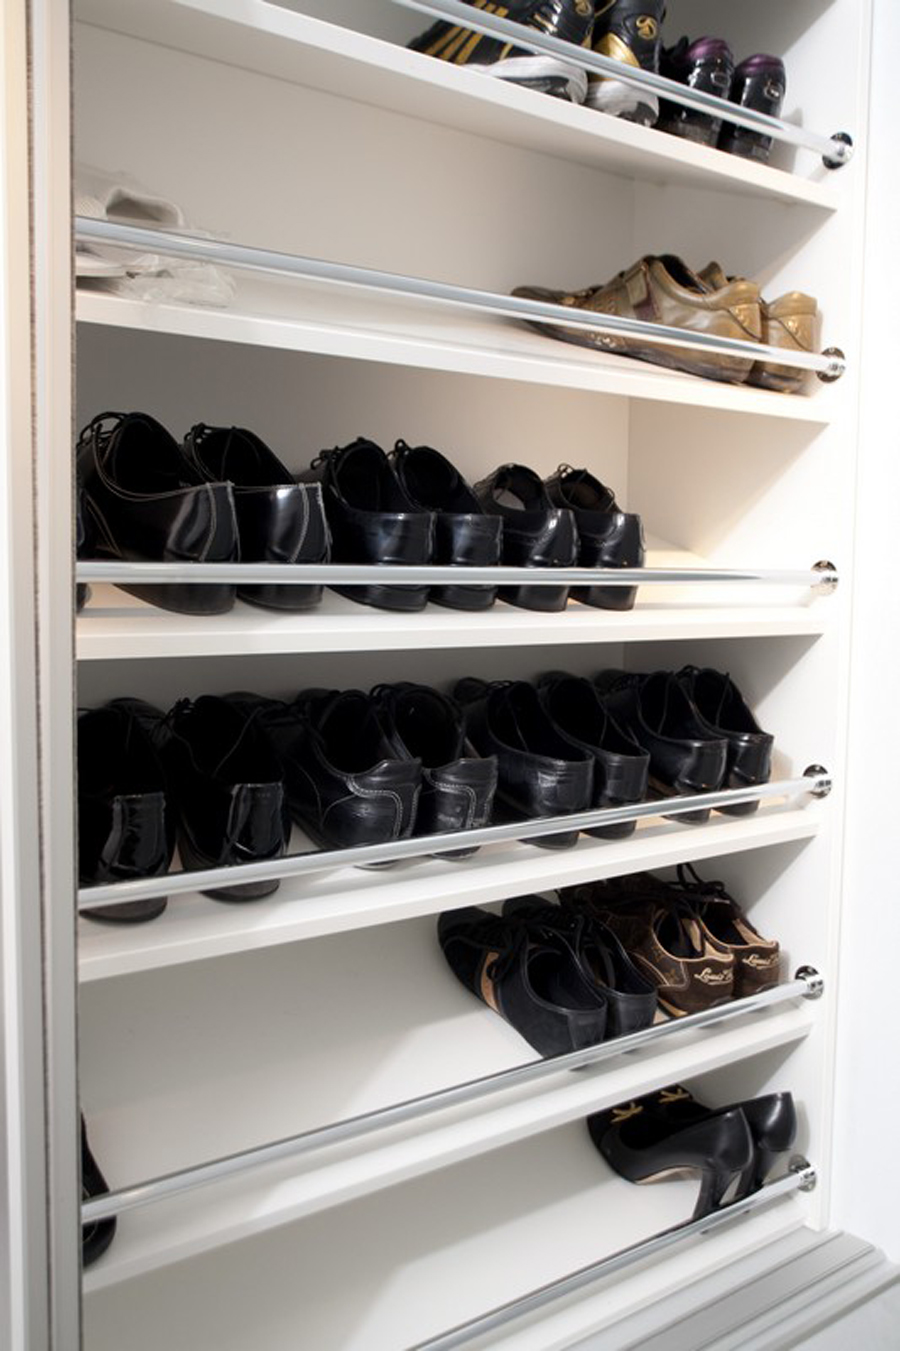 угол наклона полок для обуви в шкафу